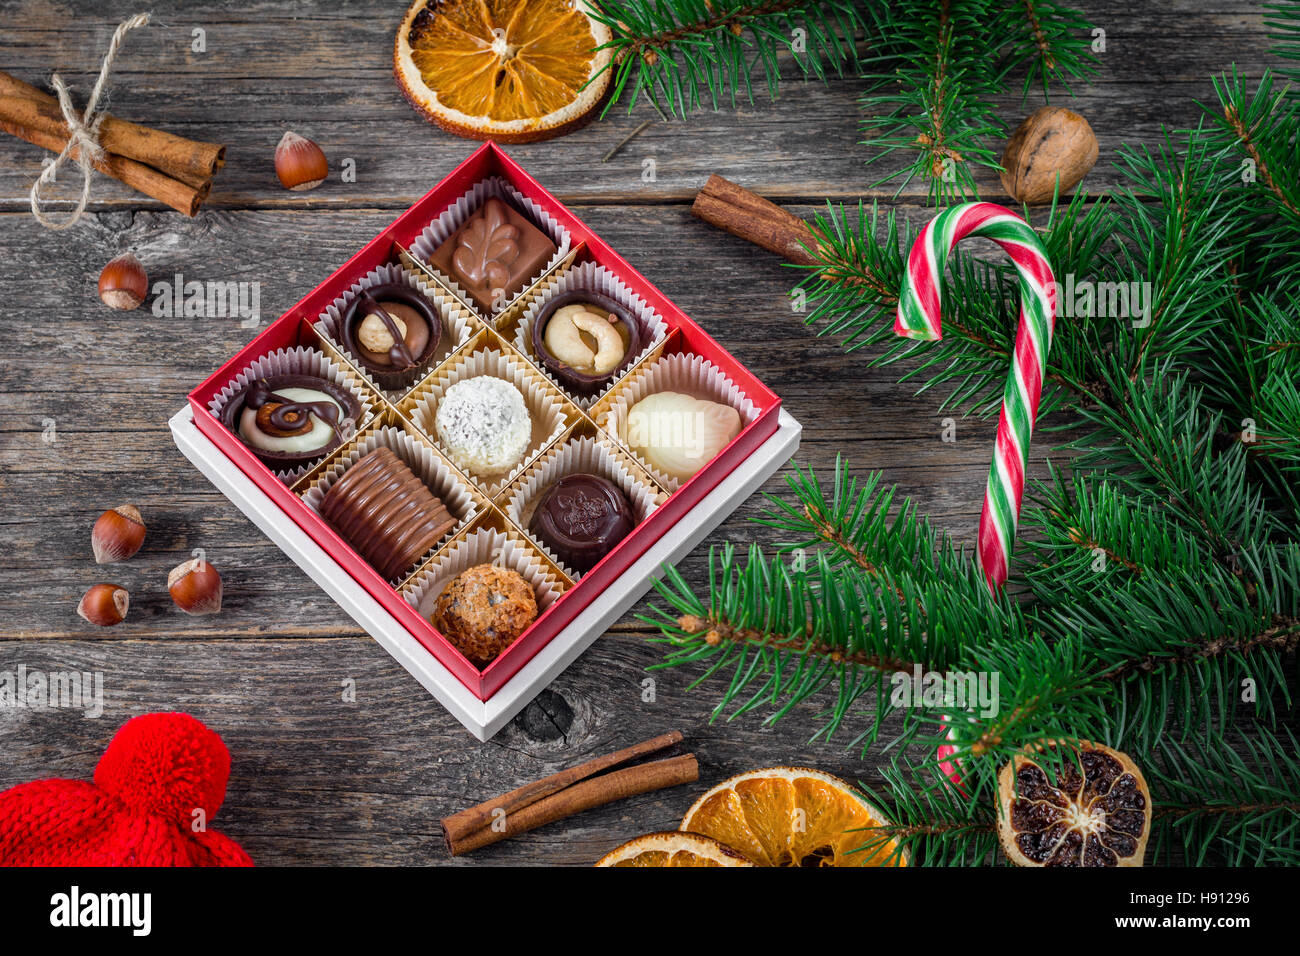 Regali di Natale, Natale decorazione: scatola di cioccolatini e caramelle, candy cane, spezie, frutta secca ed essiccata anelli arancioni sul tavolo di legno Foto Stock